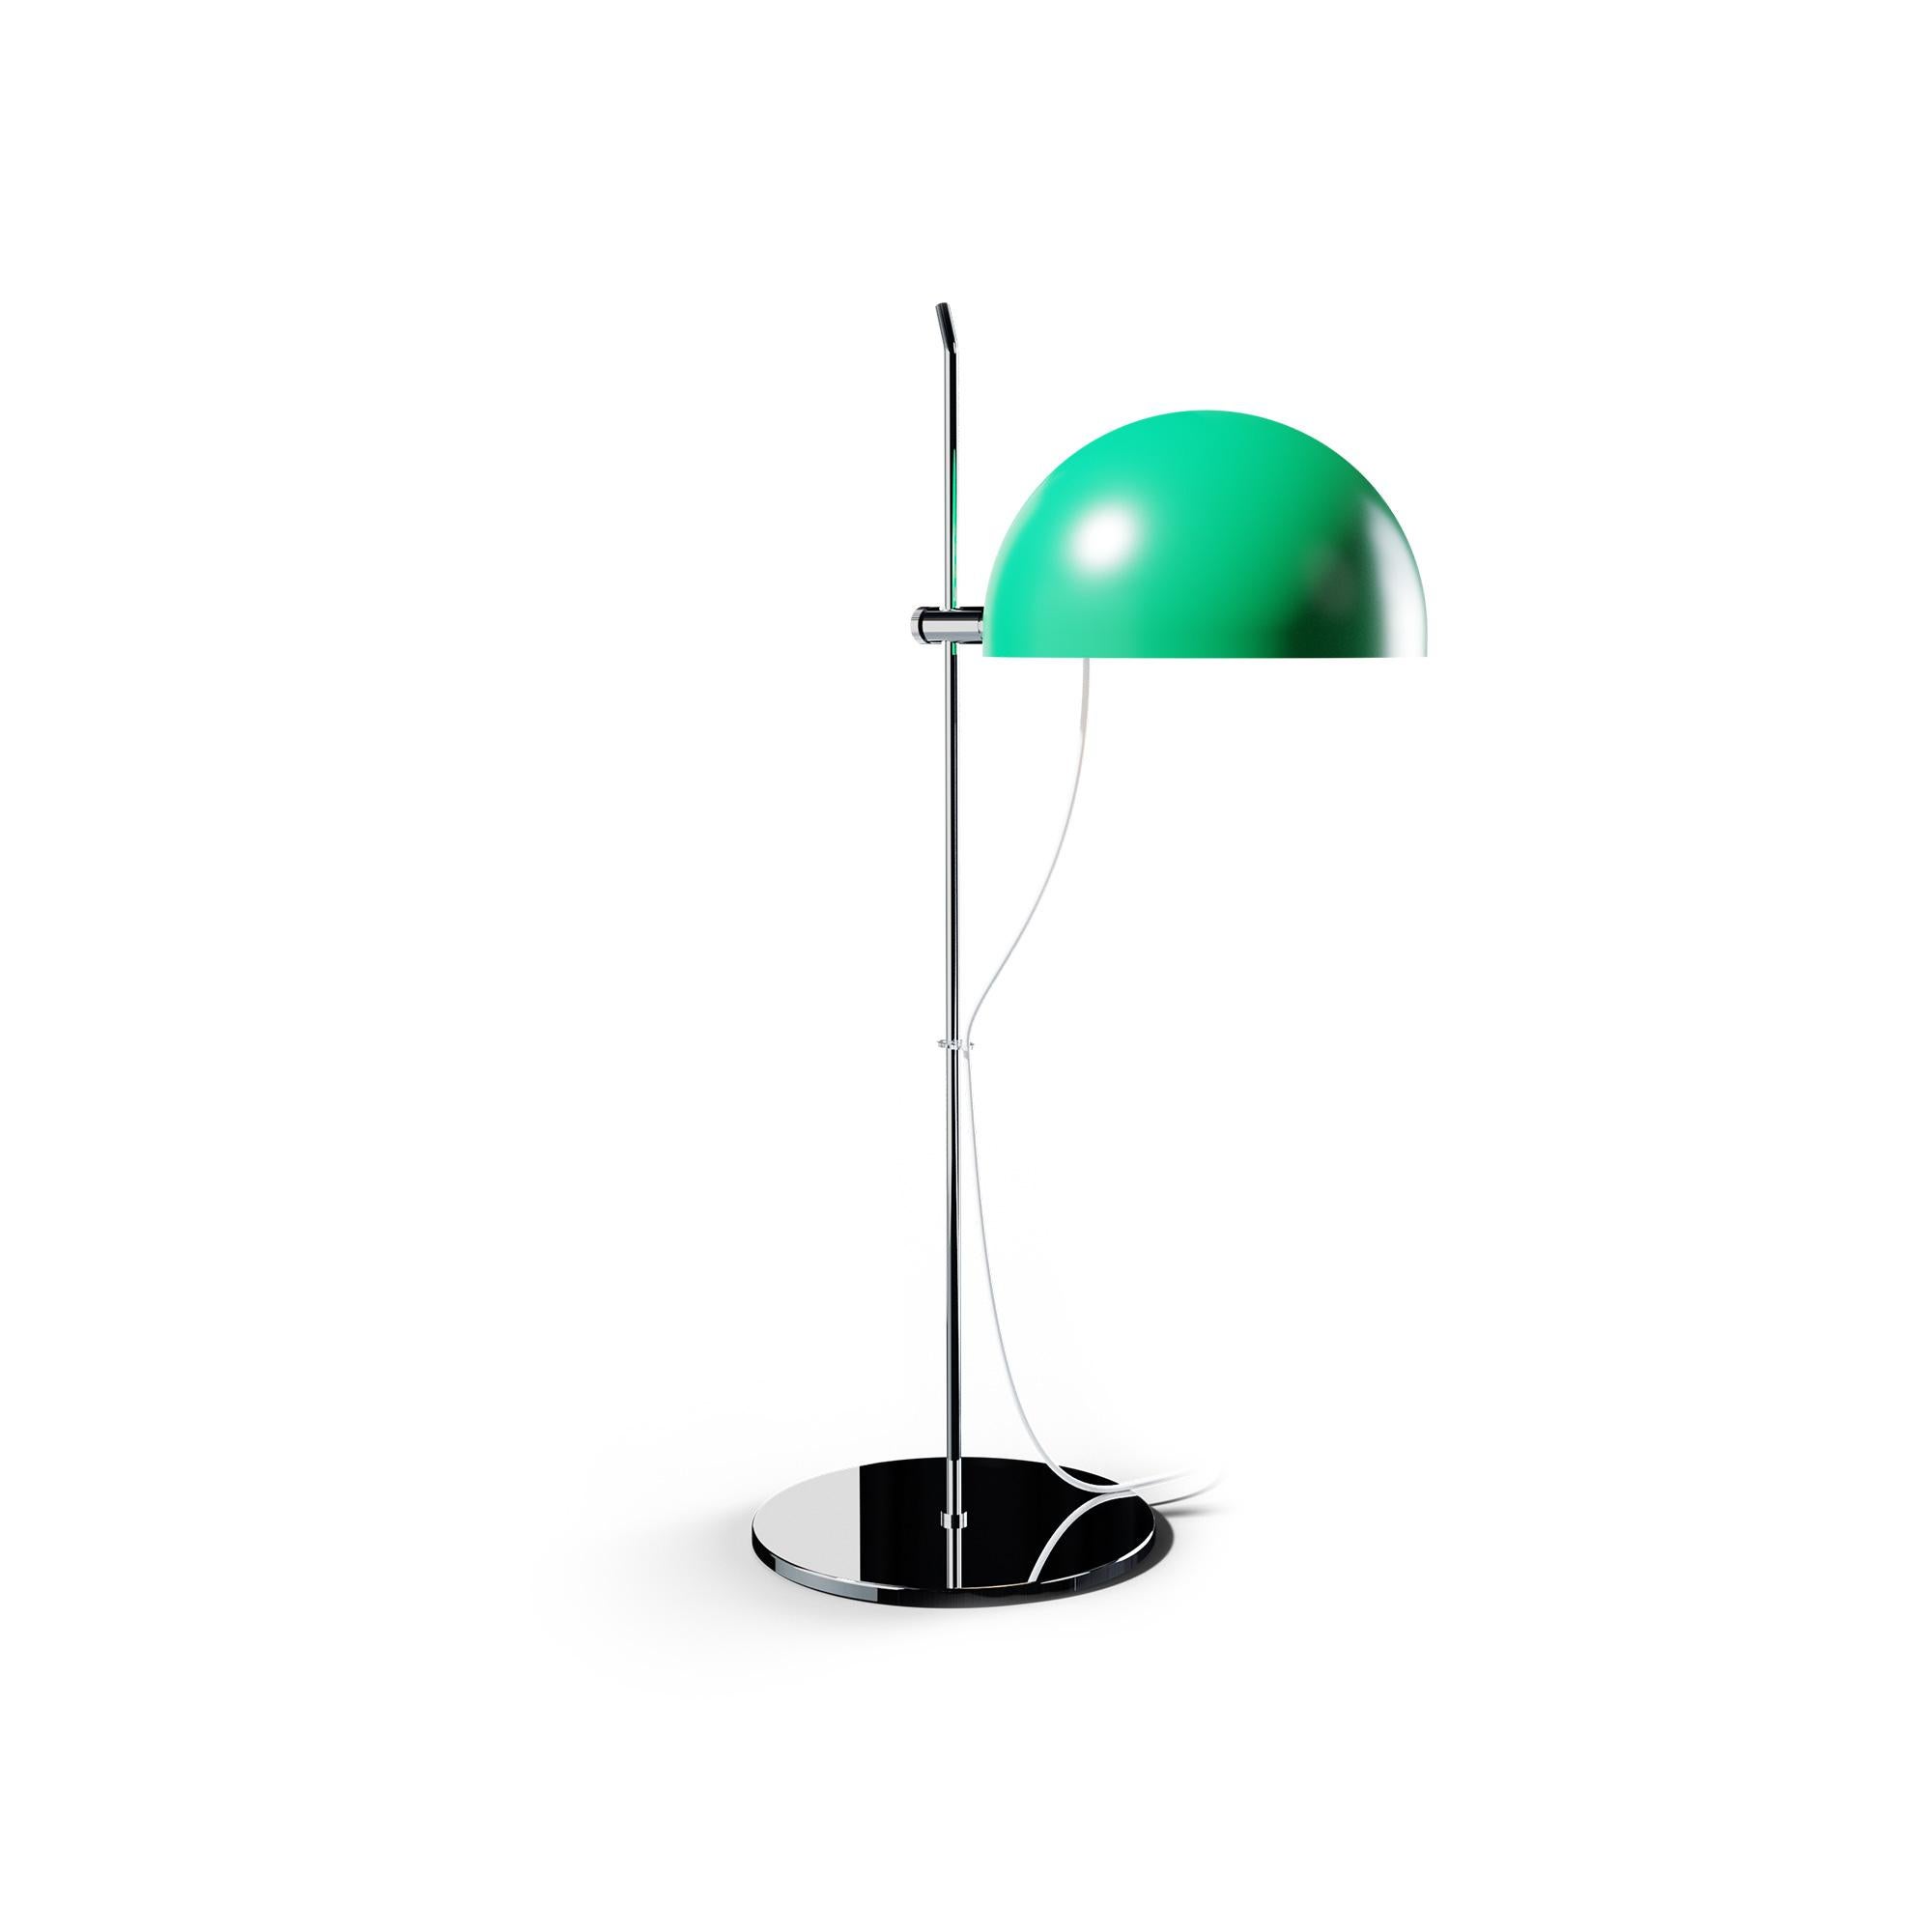 Alain Richard 'A21' Desk Lamp in Chrome for Disderot For Sale 6